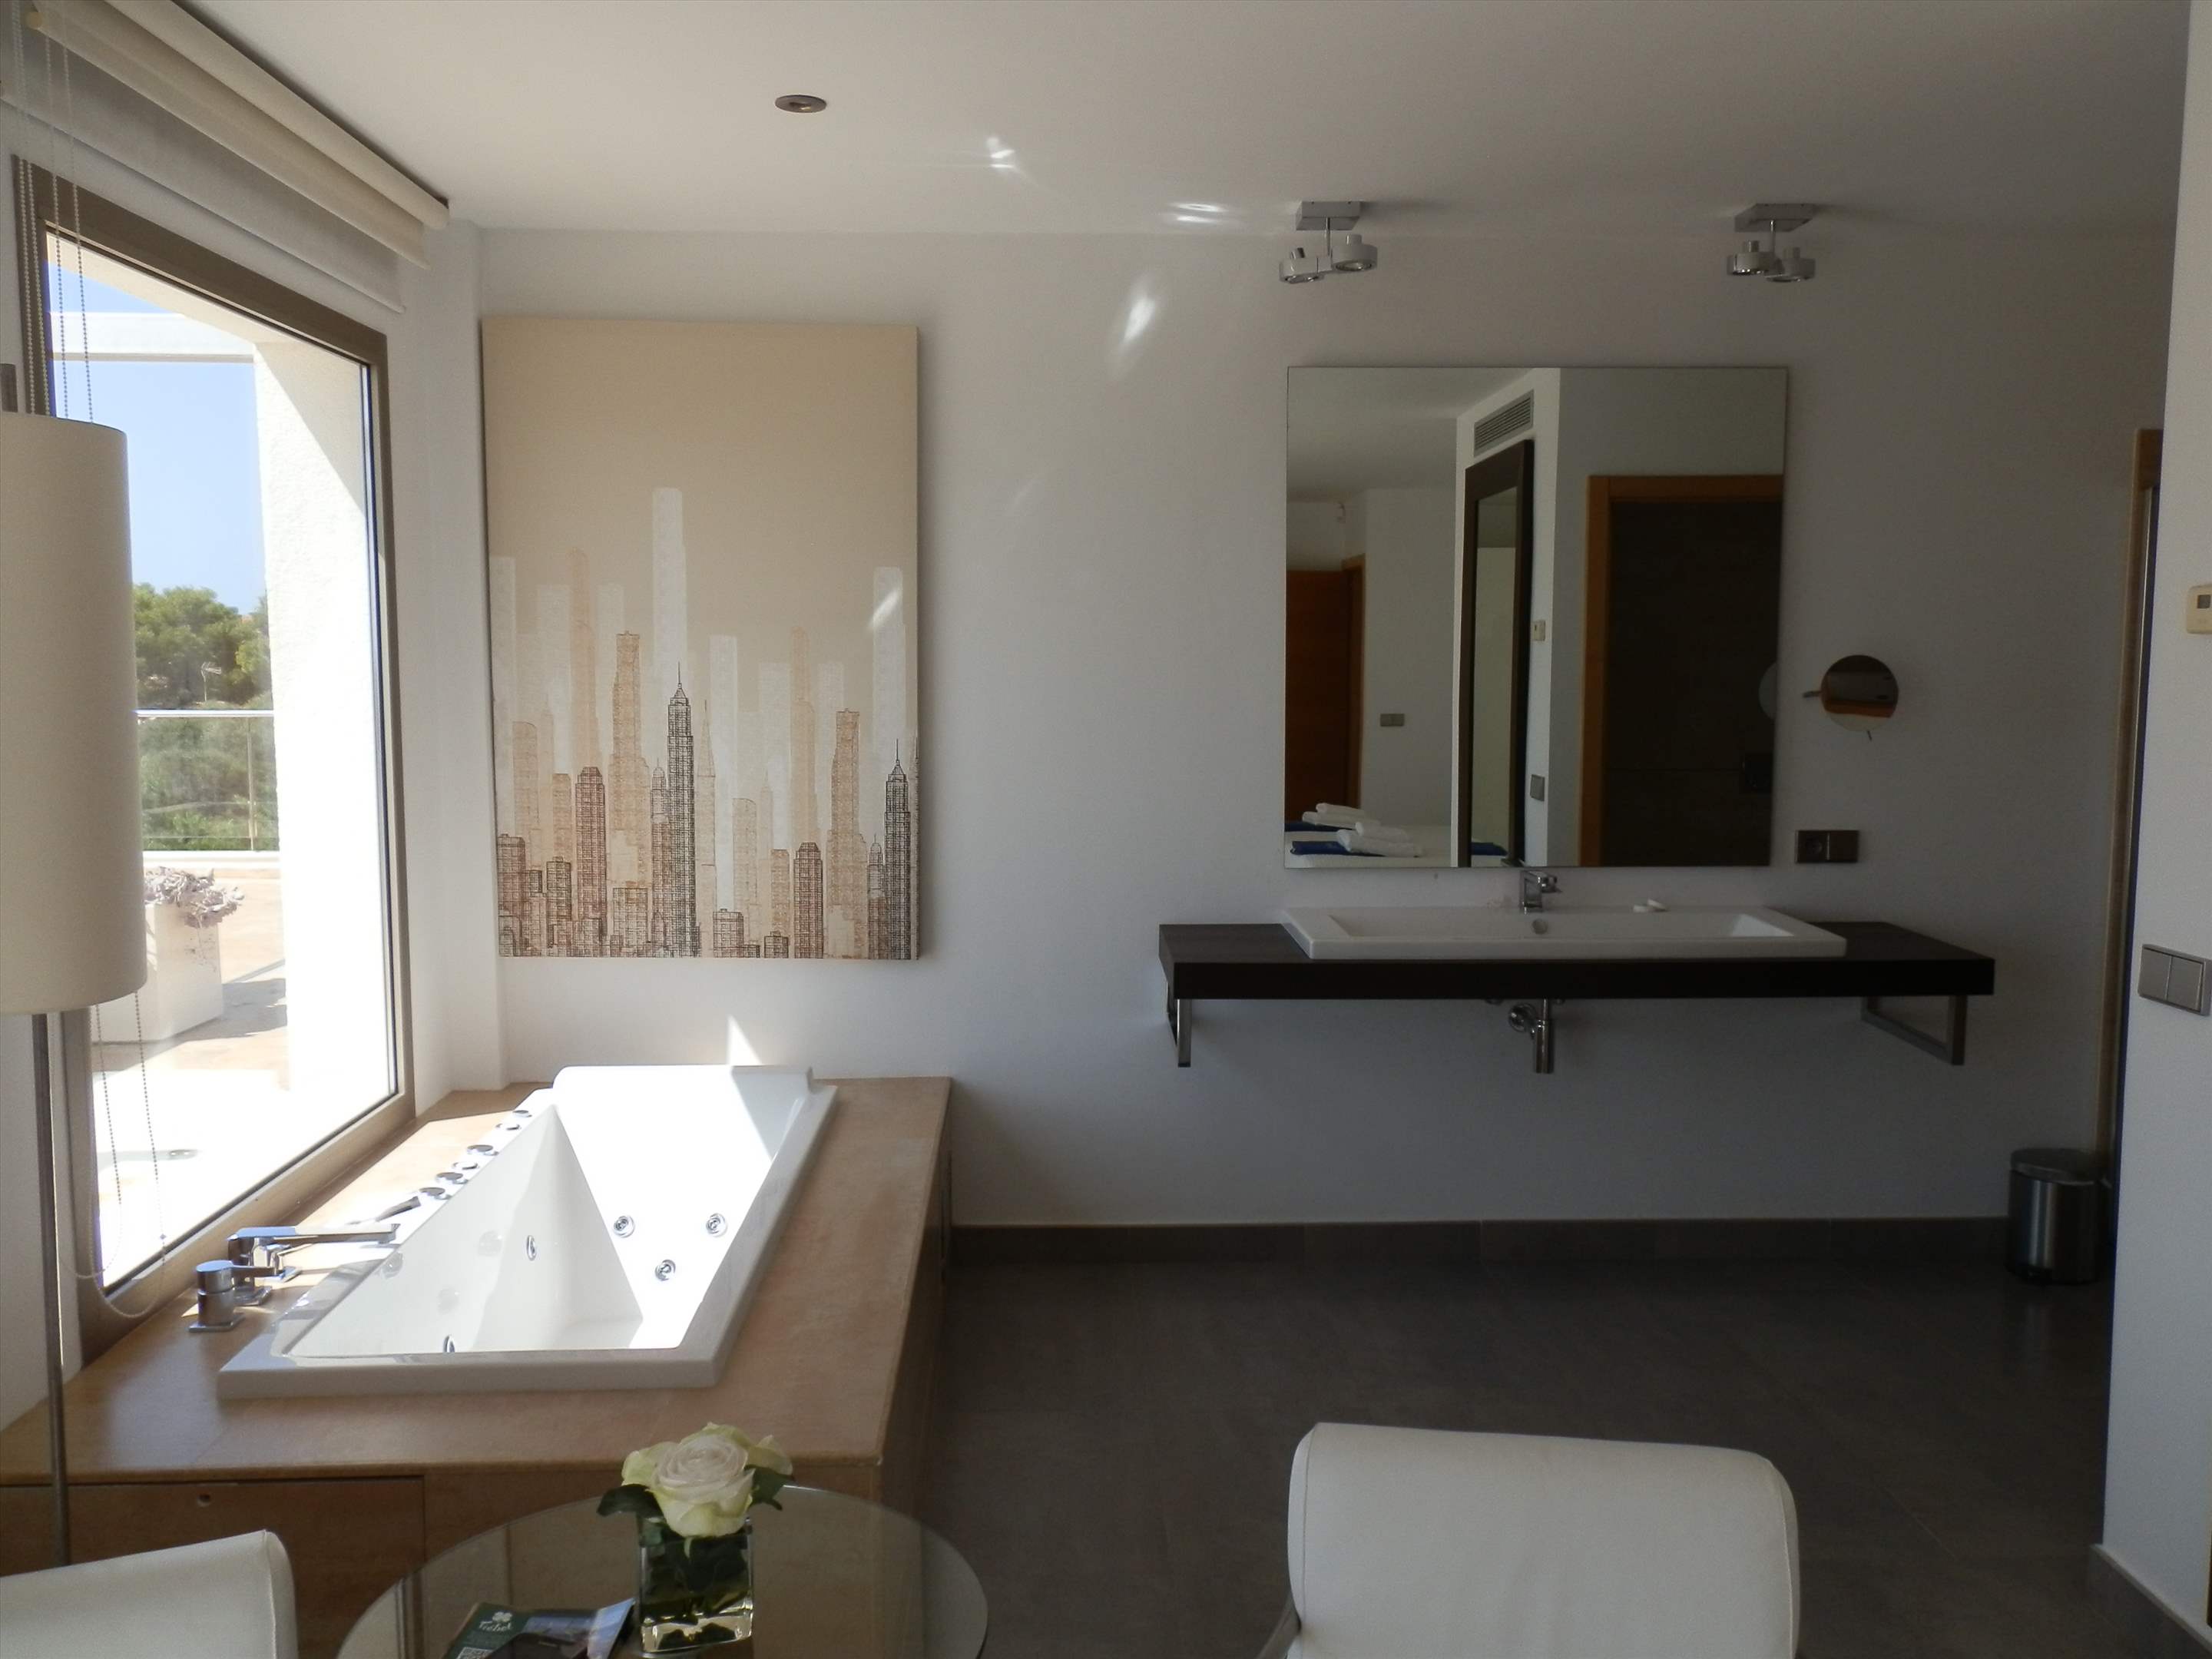 Casa Pitiusa, 4 Bedroom rate, 4 bedroom villa in Mahon, San Luis & South East, Menorca Photo #13